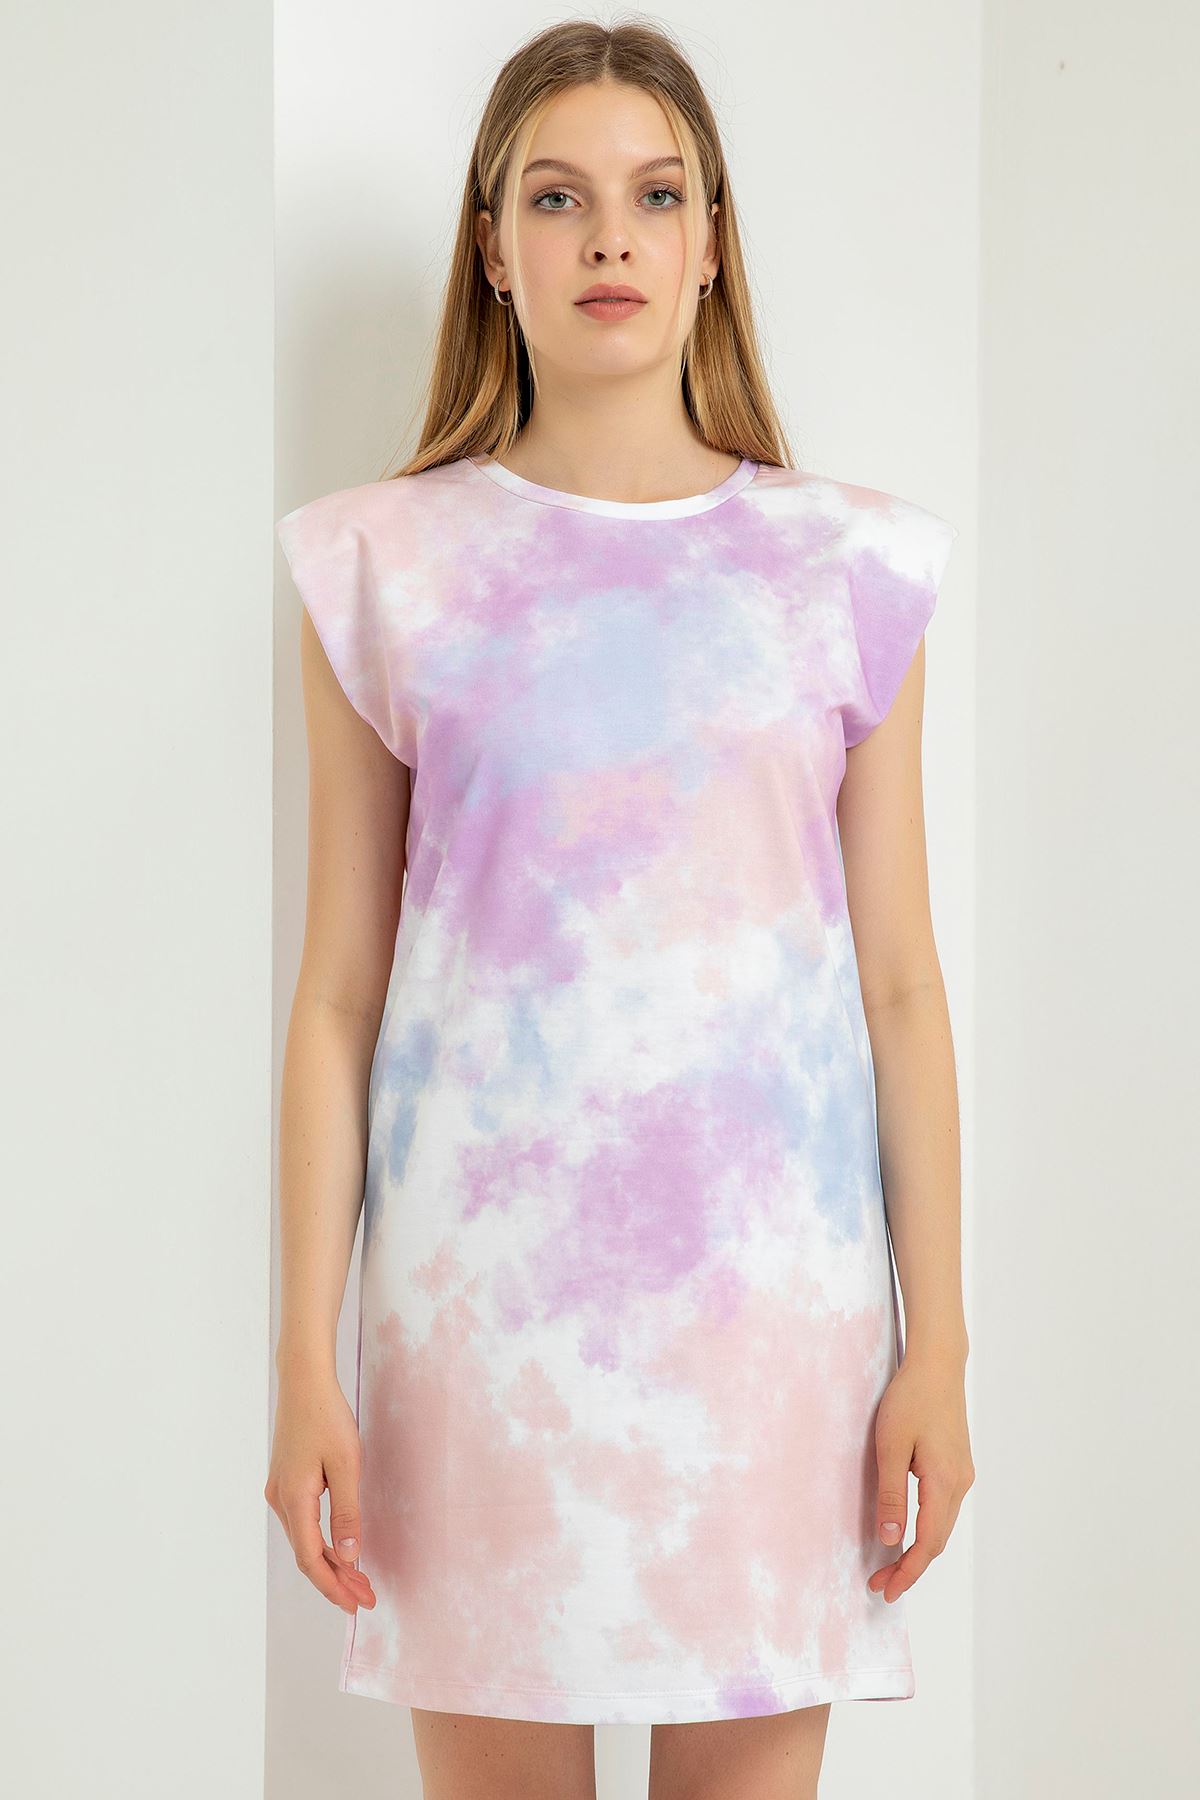 Knit Fabric Full Fit Cloud Print Stuffed Women Dress - Lilac